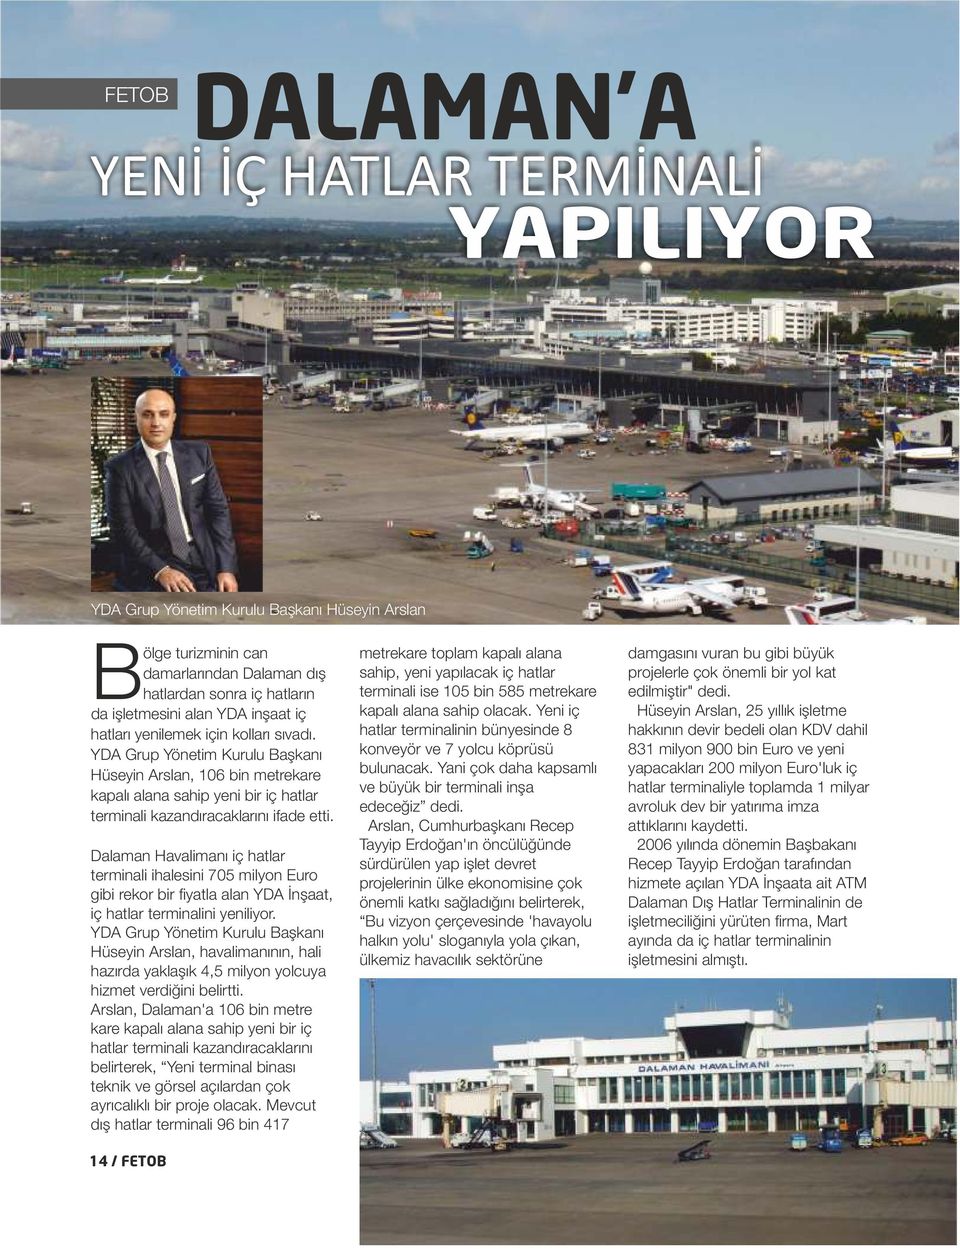 Dalaman Havalimanı iç hatlar terminali ihalesini 705 milyon Euro gibi rekor bir fiyatla alan YDA İnşaat, iç hatlar terminalini yeniliyor.